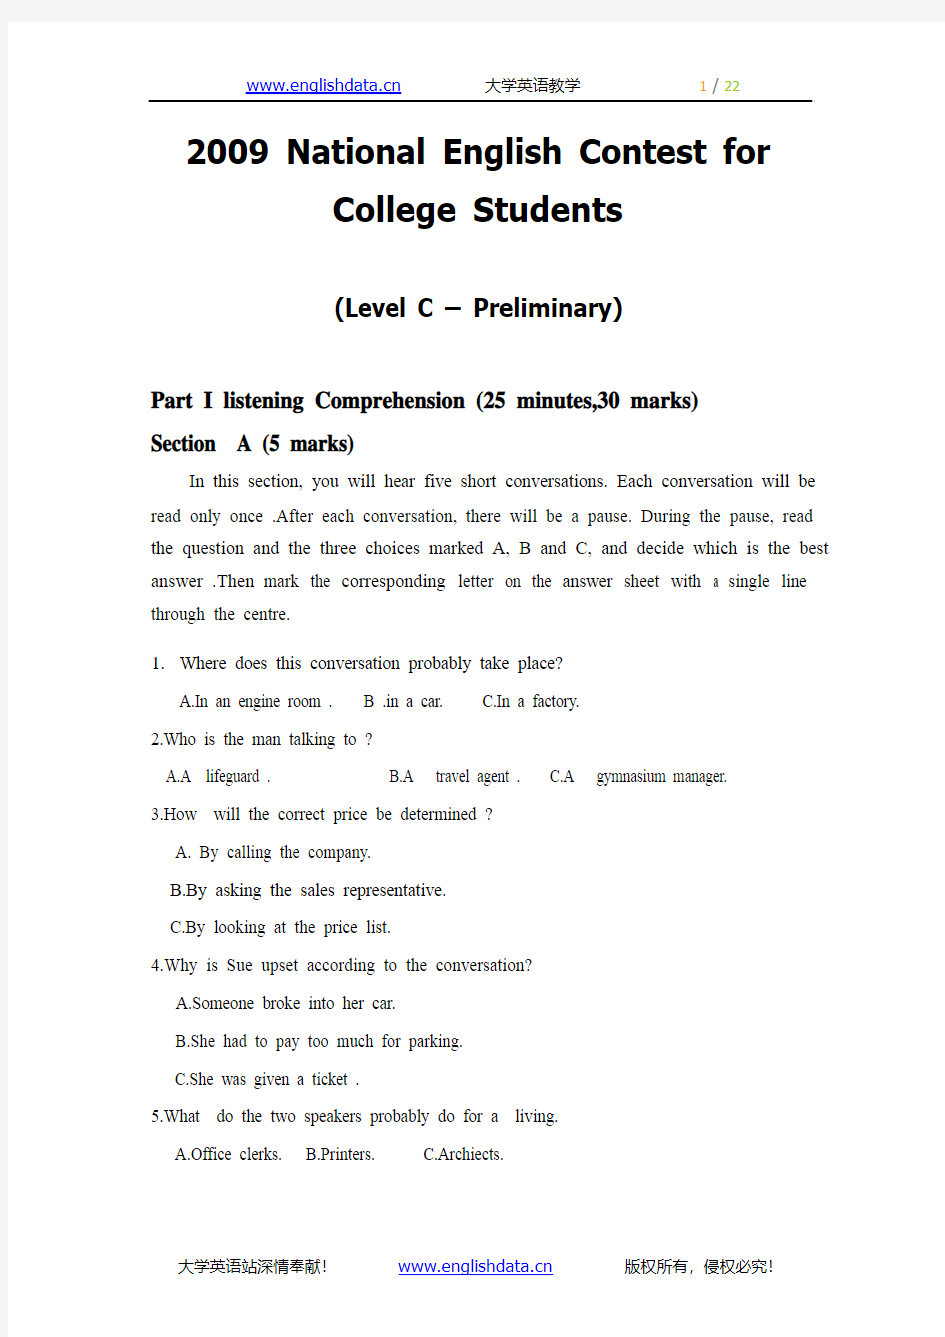 2009年全国大学生英语竞赛初赛真题试卷(C类)及答案